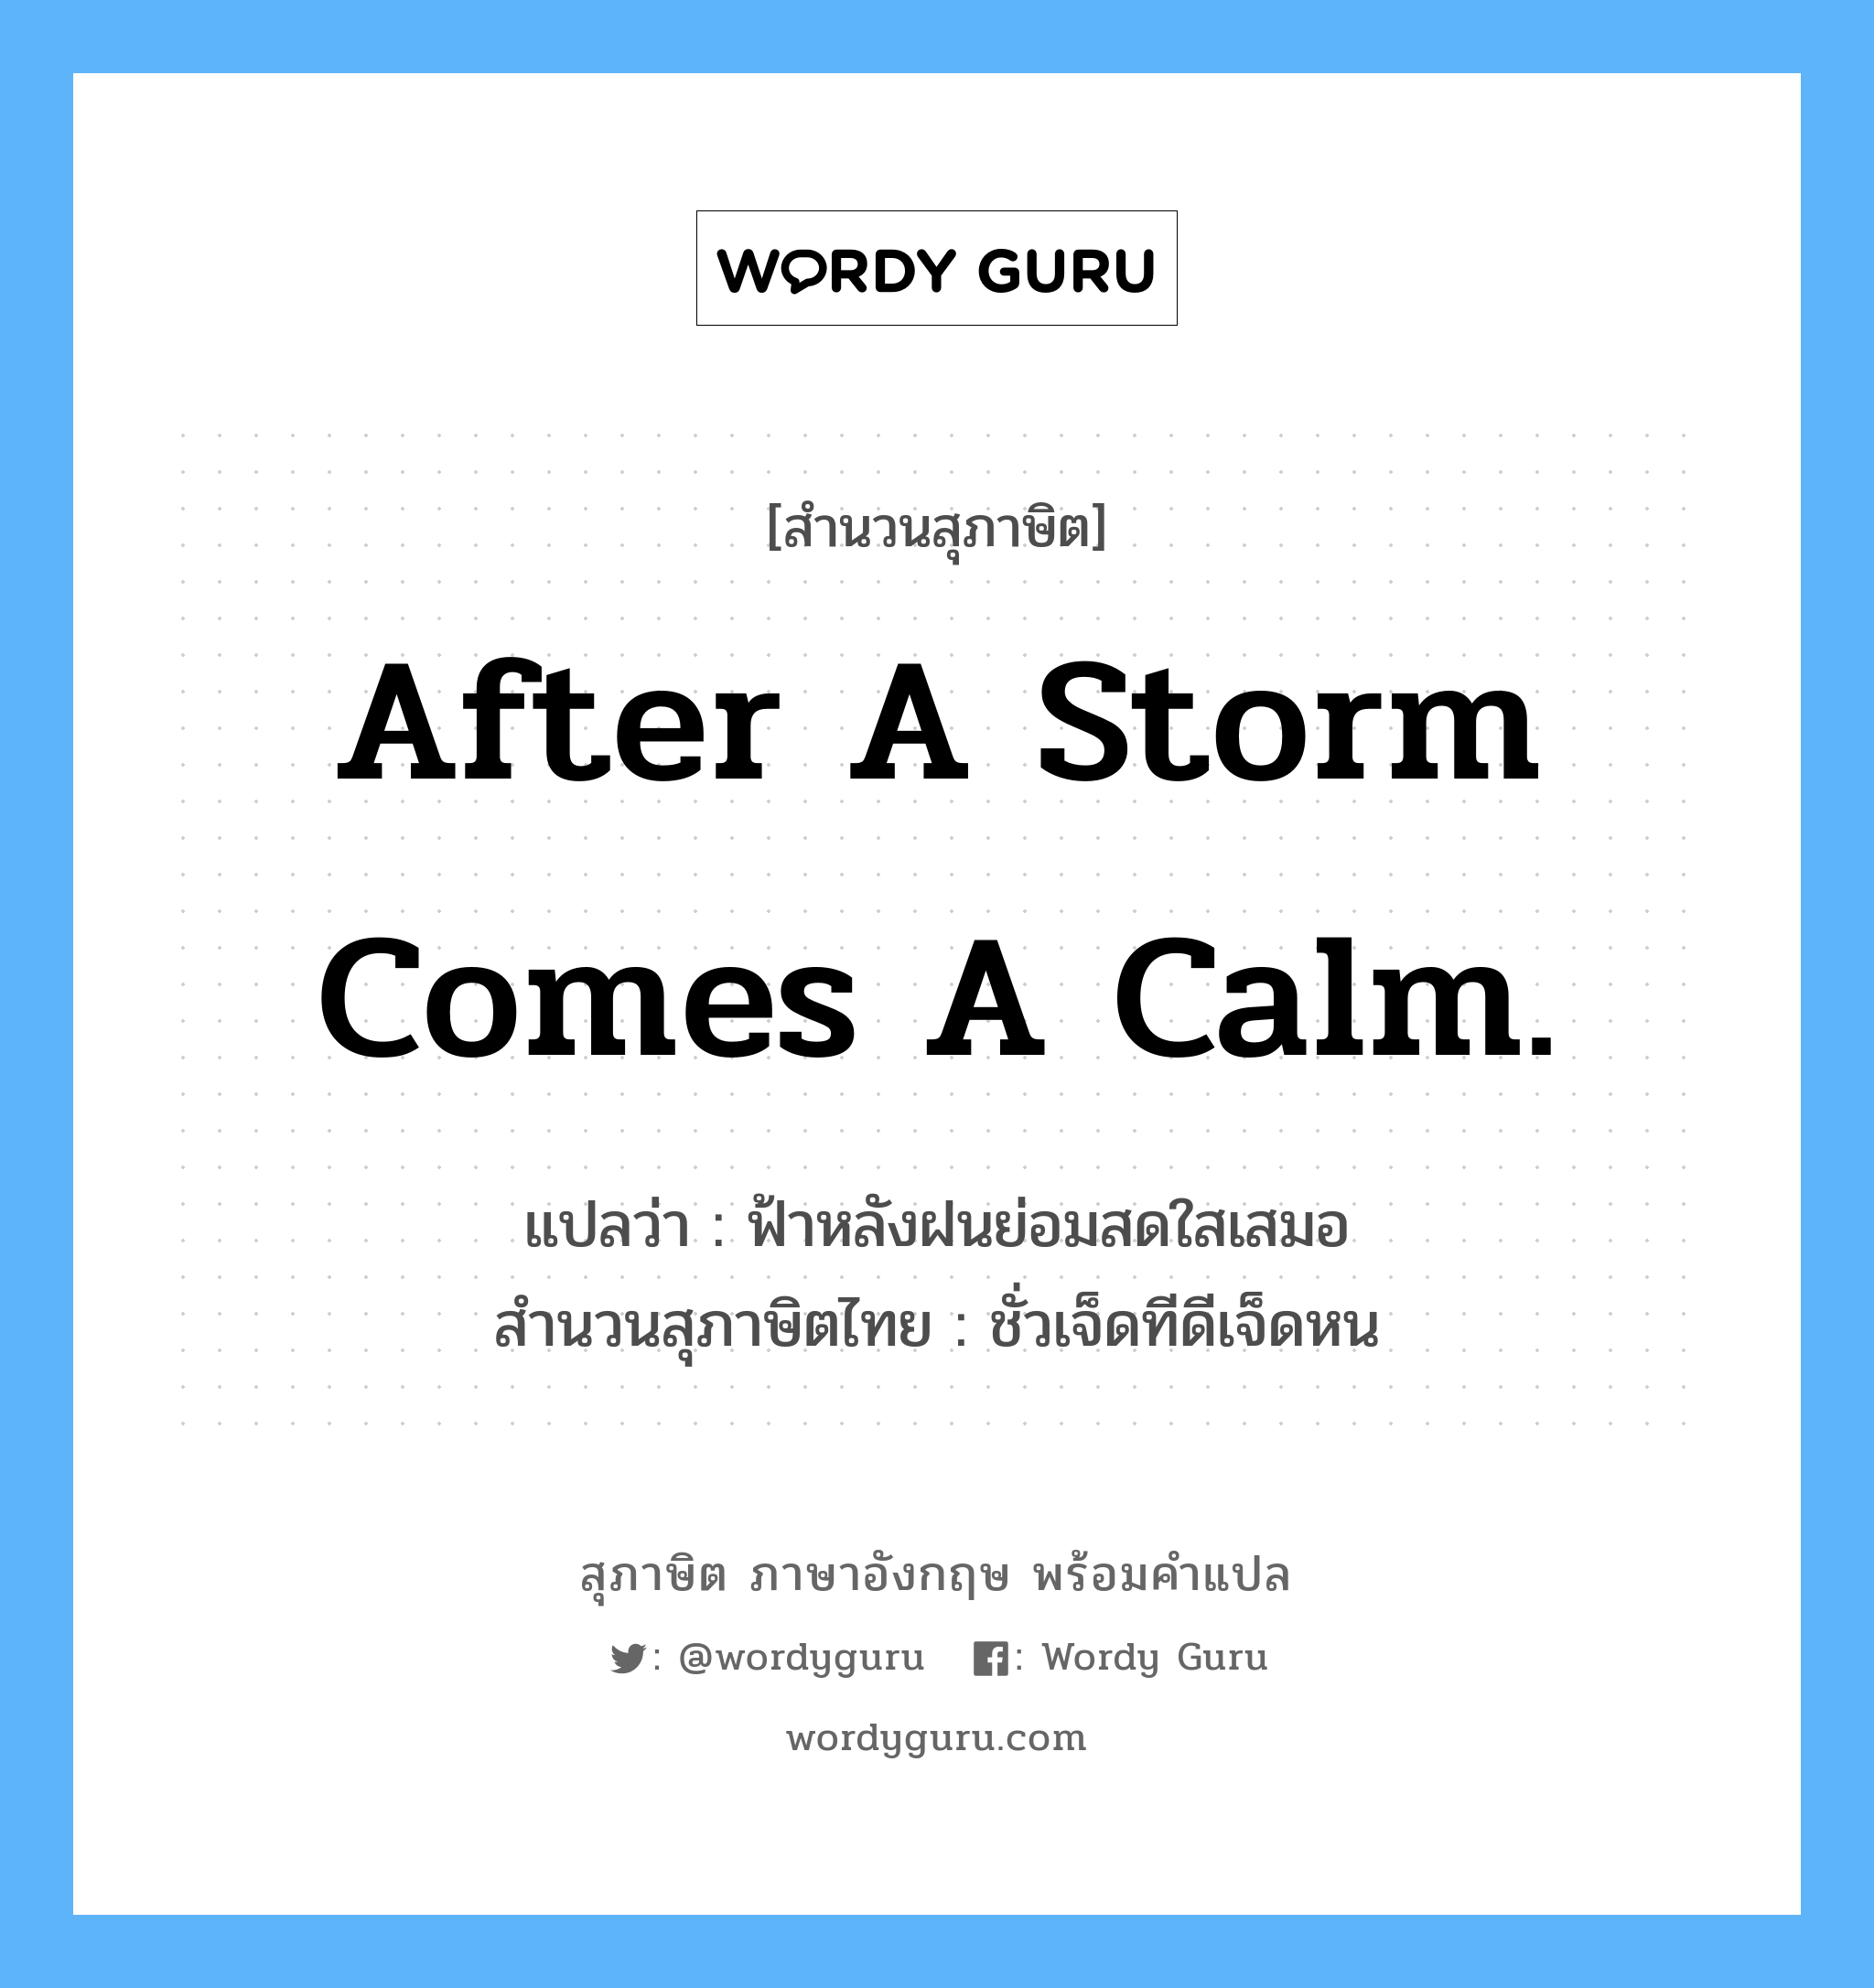 After a storm comes a calm. แปลว่า?, สำนวนสุภาษิต ภาษาอังกฤษ After a storm comes a calm. แปลว่า ฟ้าหลังฝนย่อมสดใสเสมอ สำนวนสุภาษิตไทย ชั่วเจ็ดทีดีเจ็ดหน